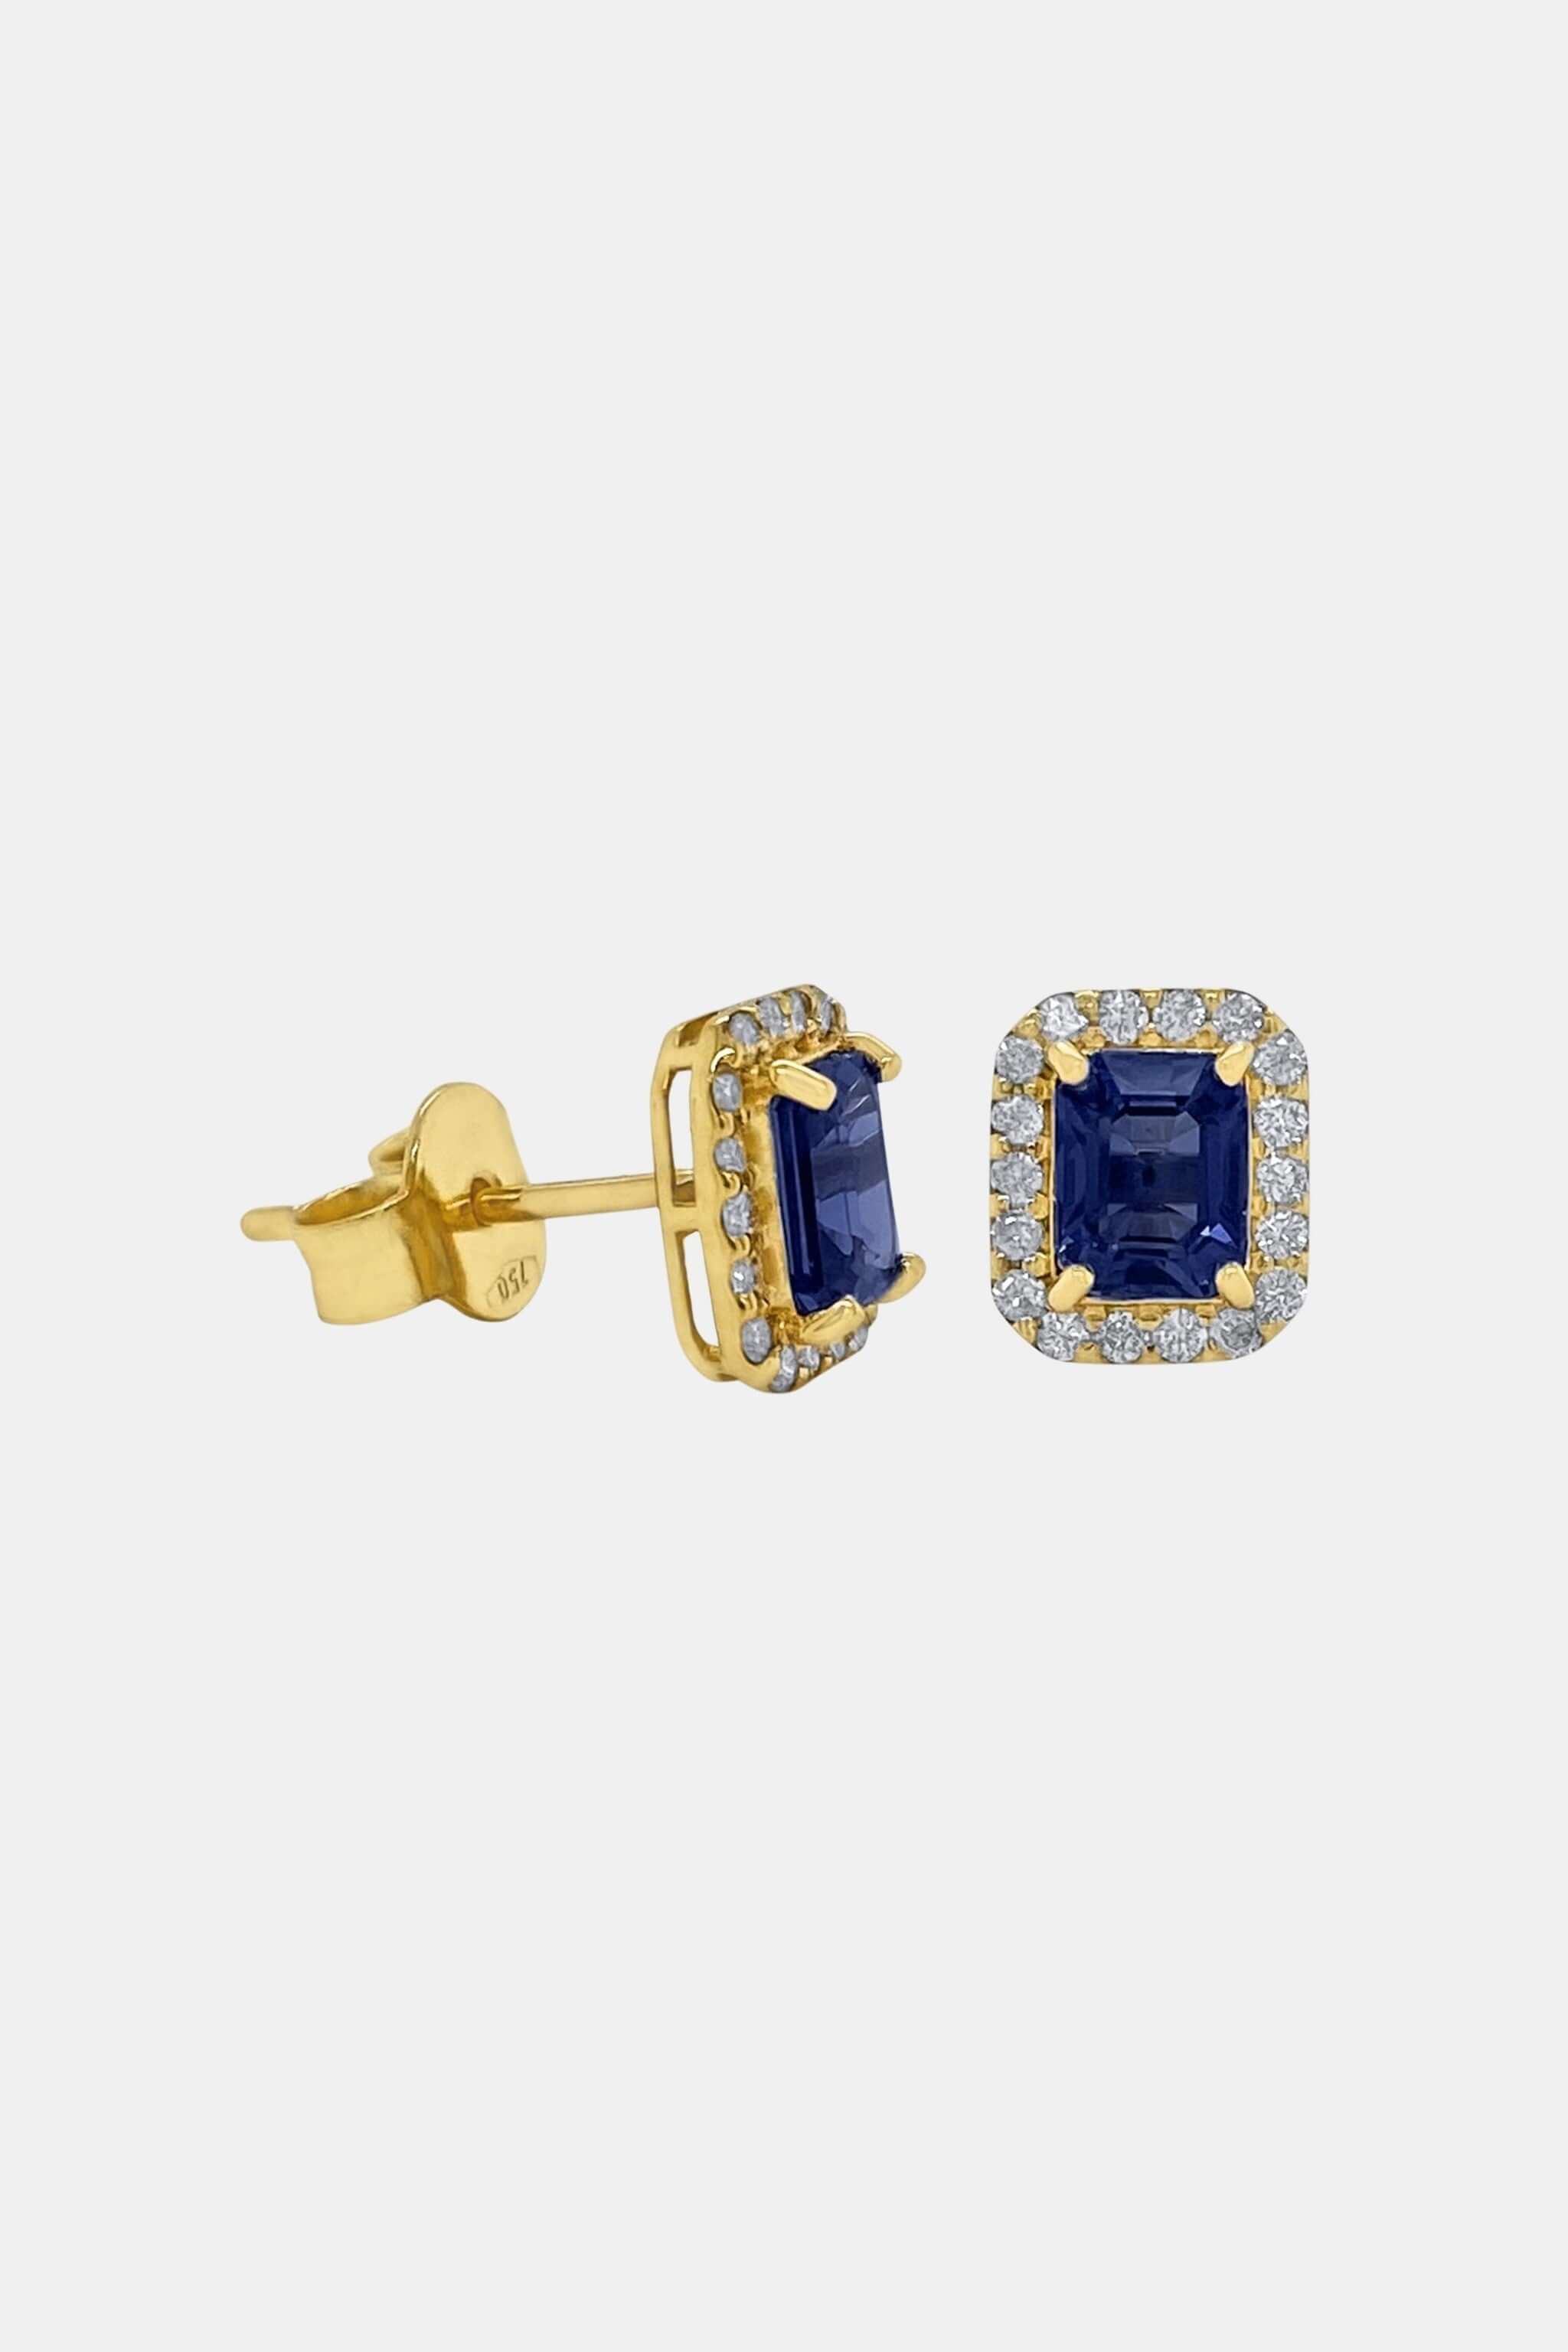 Sapphire Deco Earrings